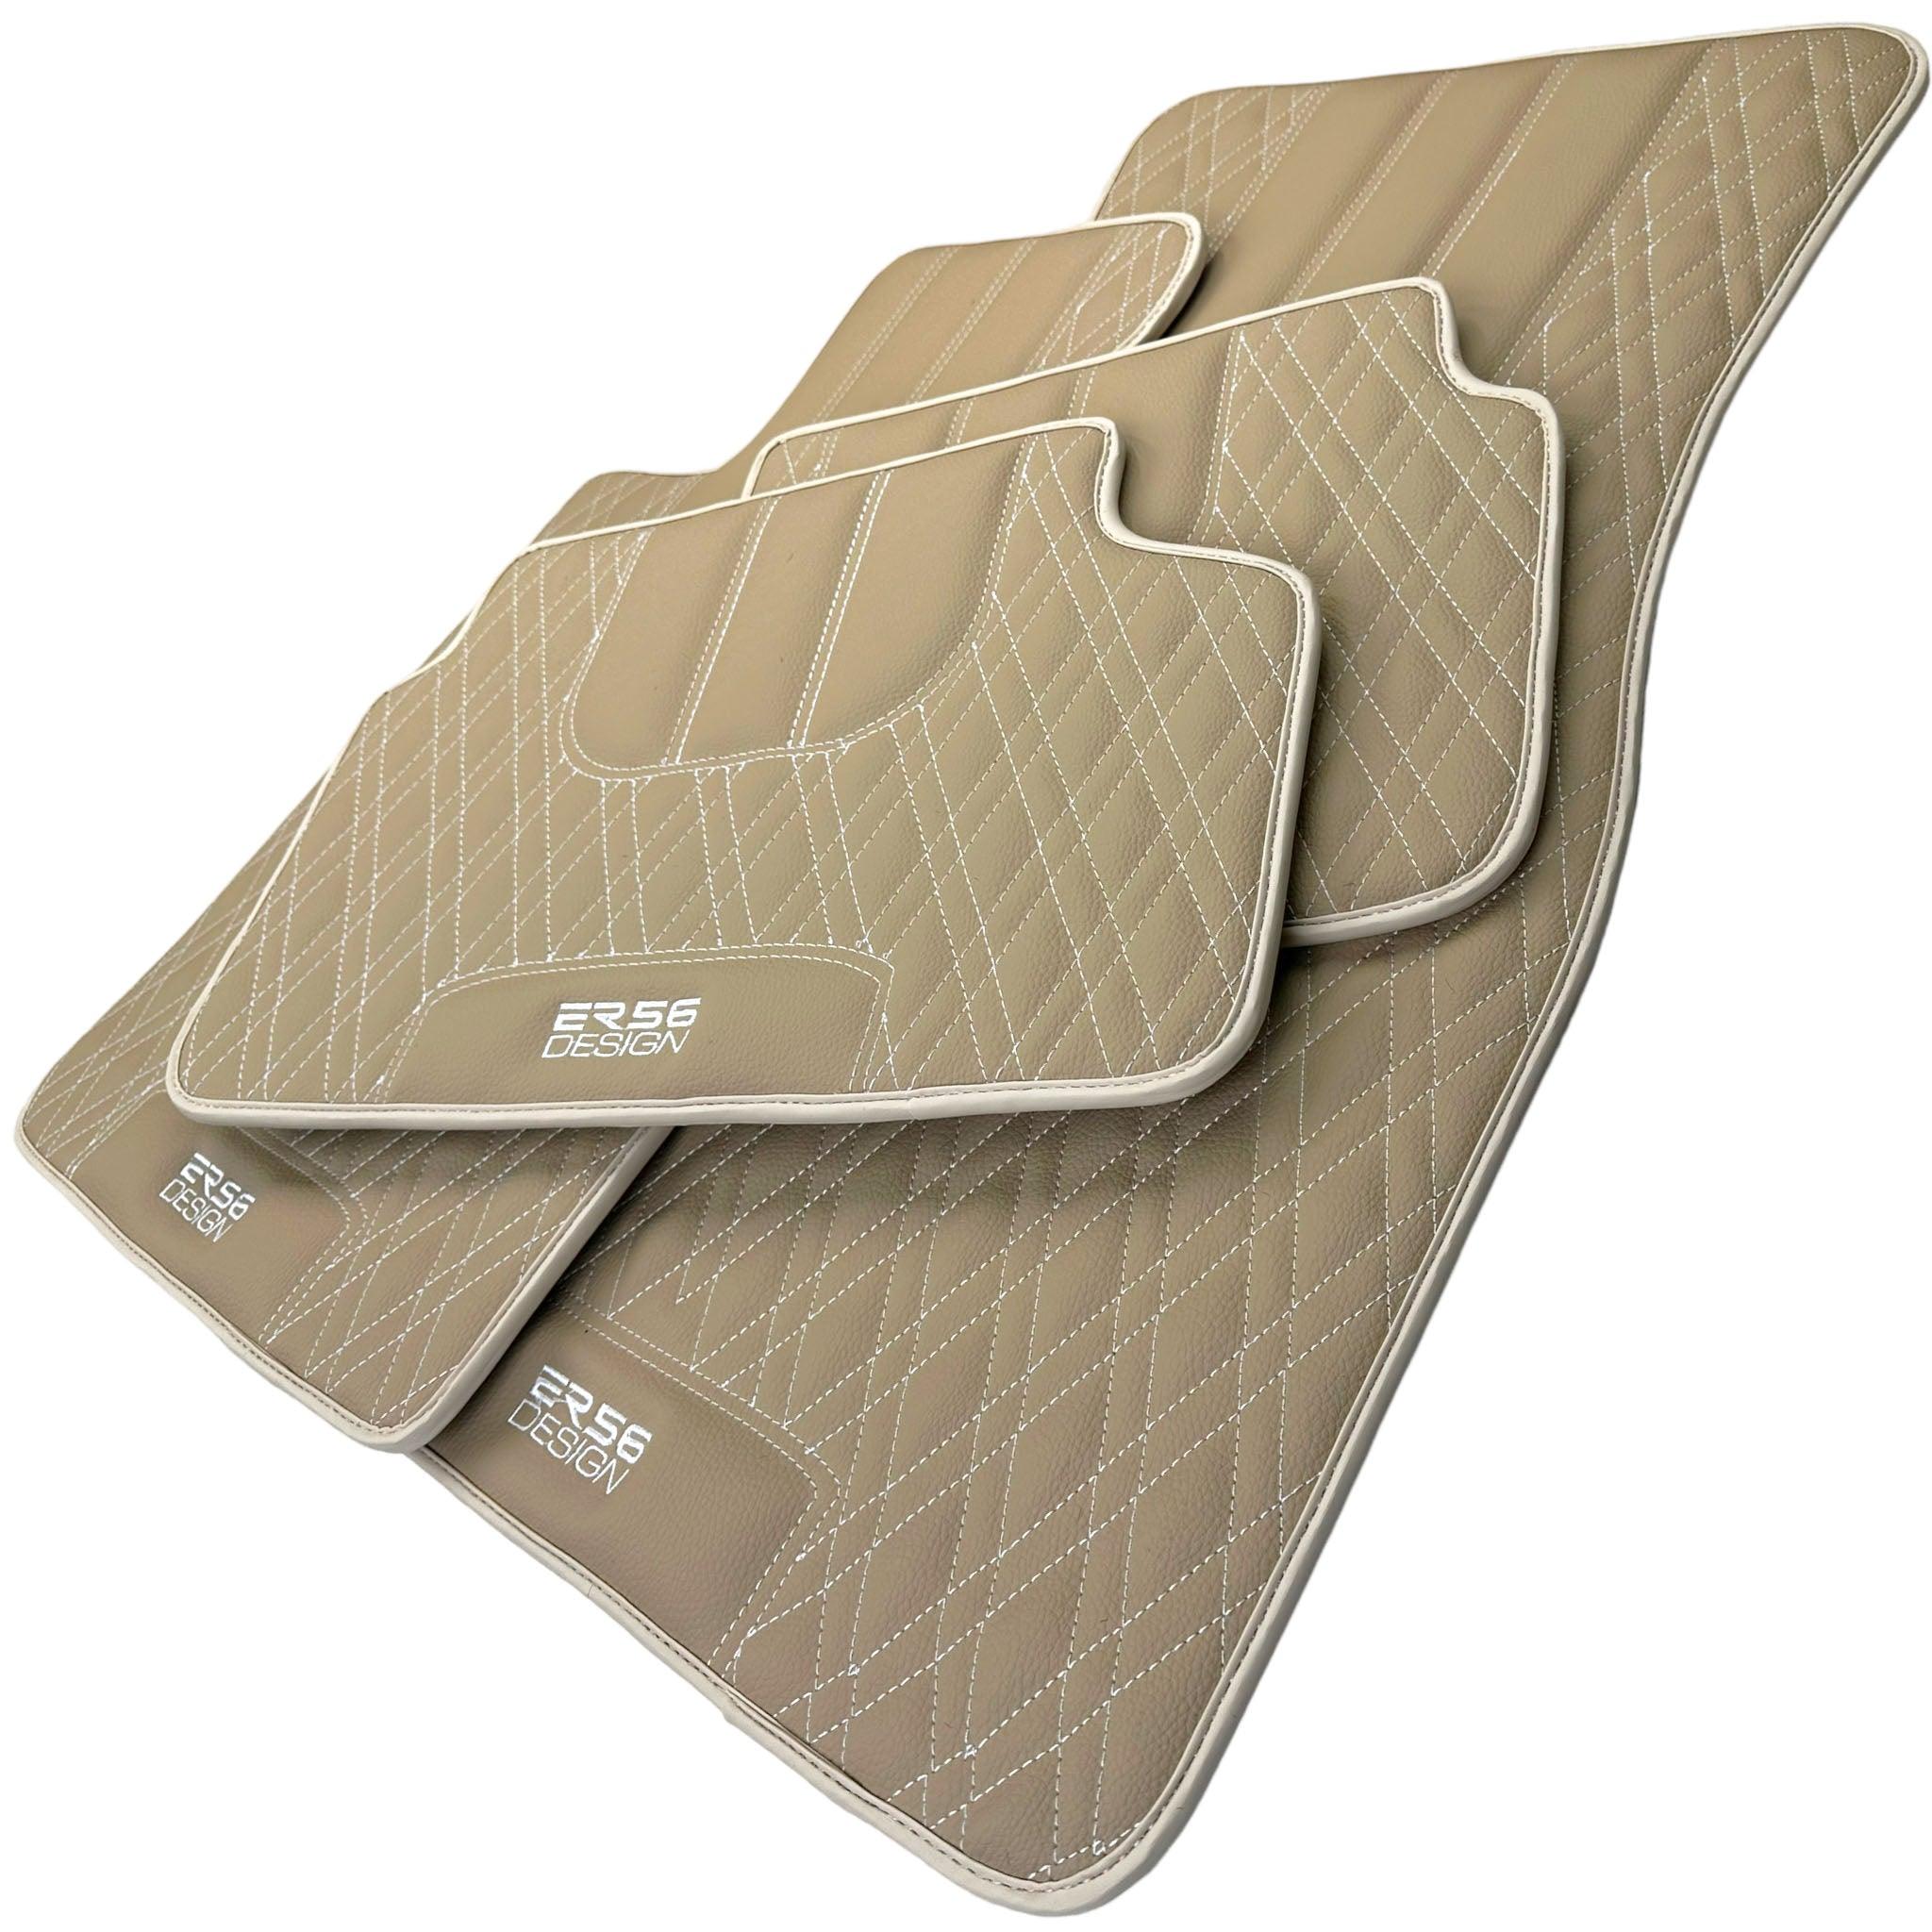 Beige Leather Floor Mats For BMW 3 Series E30 4-doors Sedan